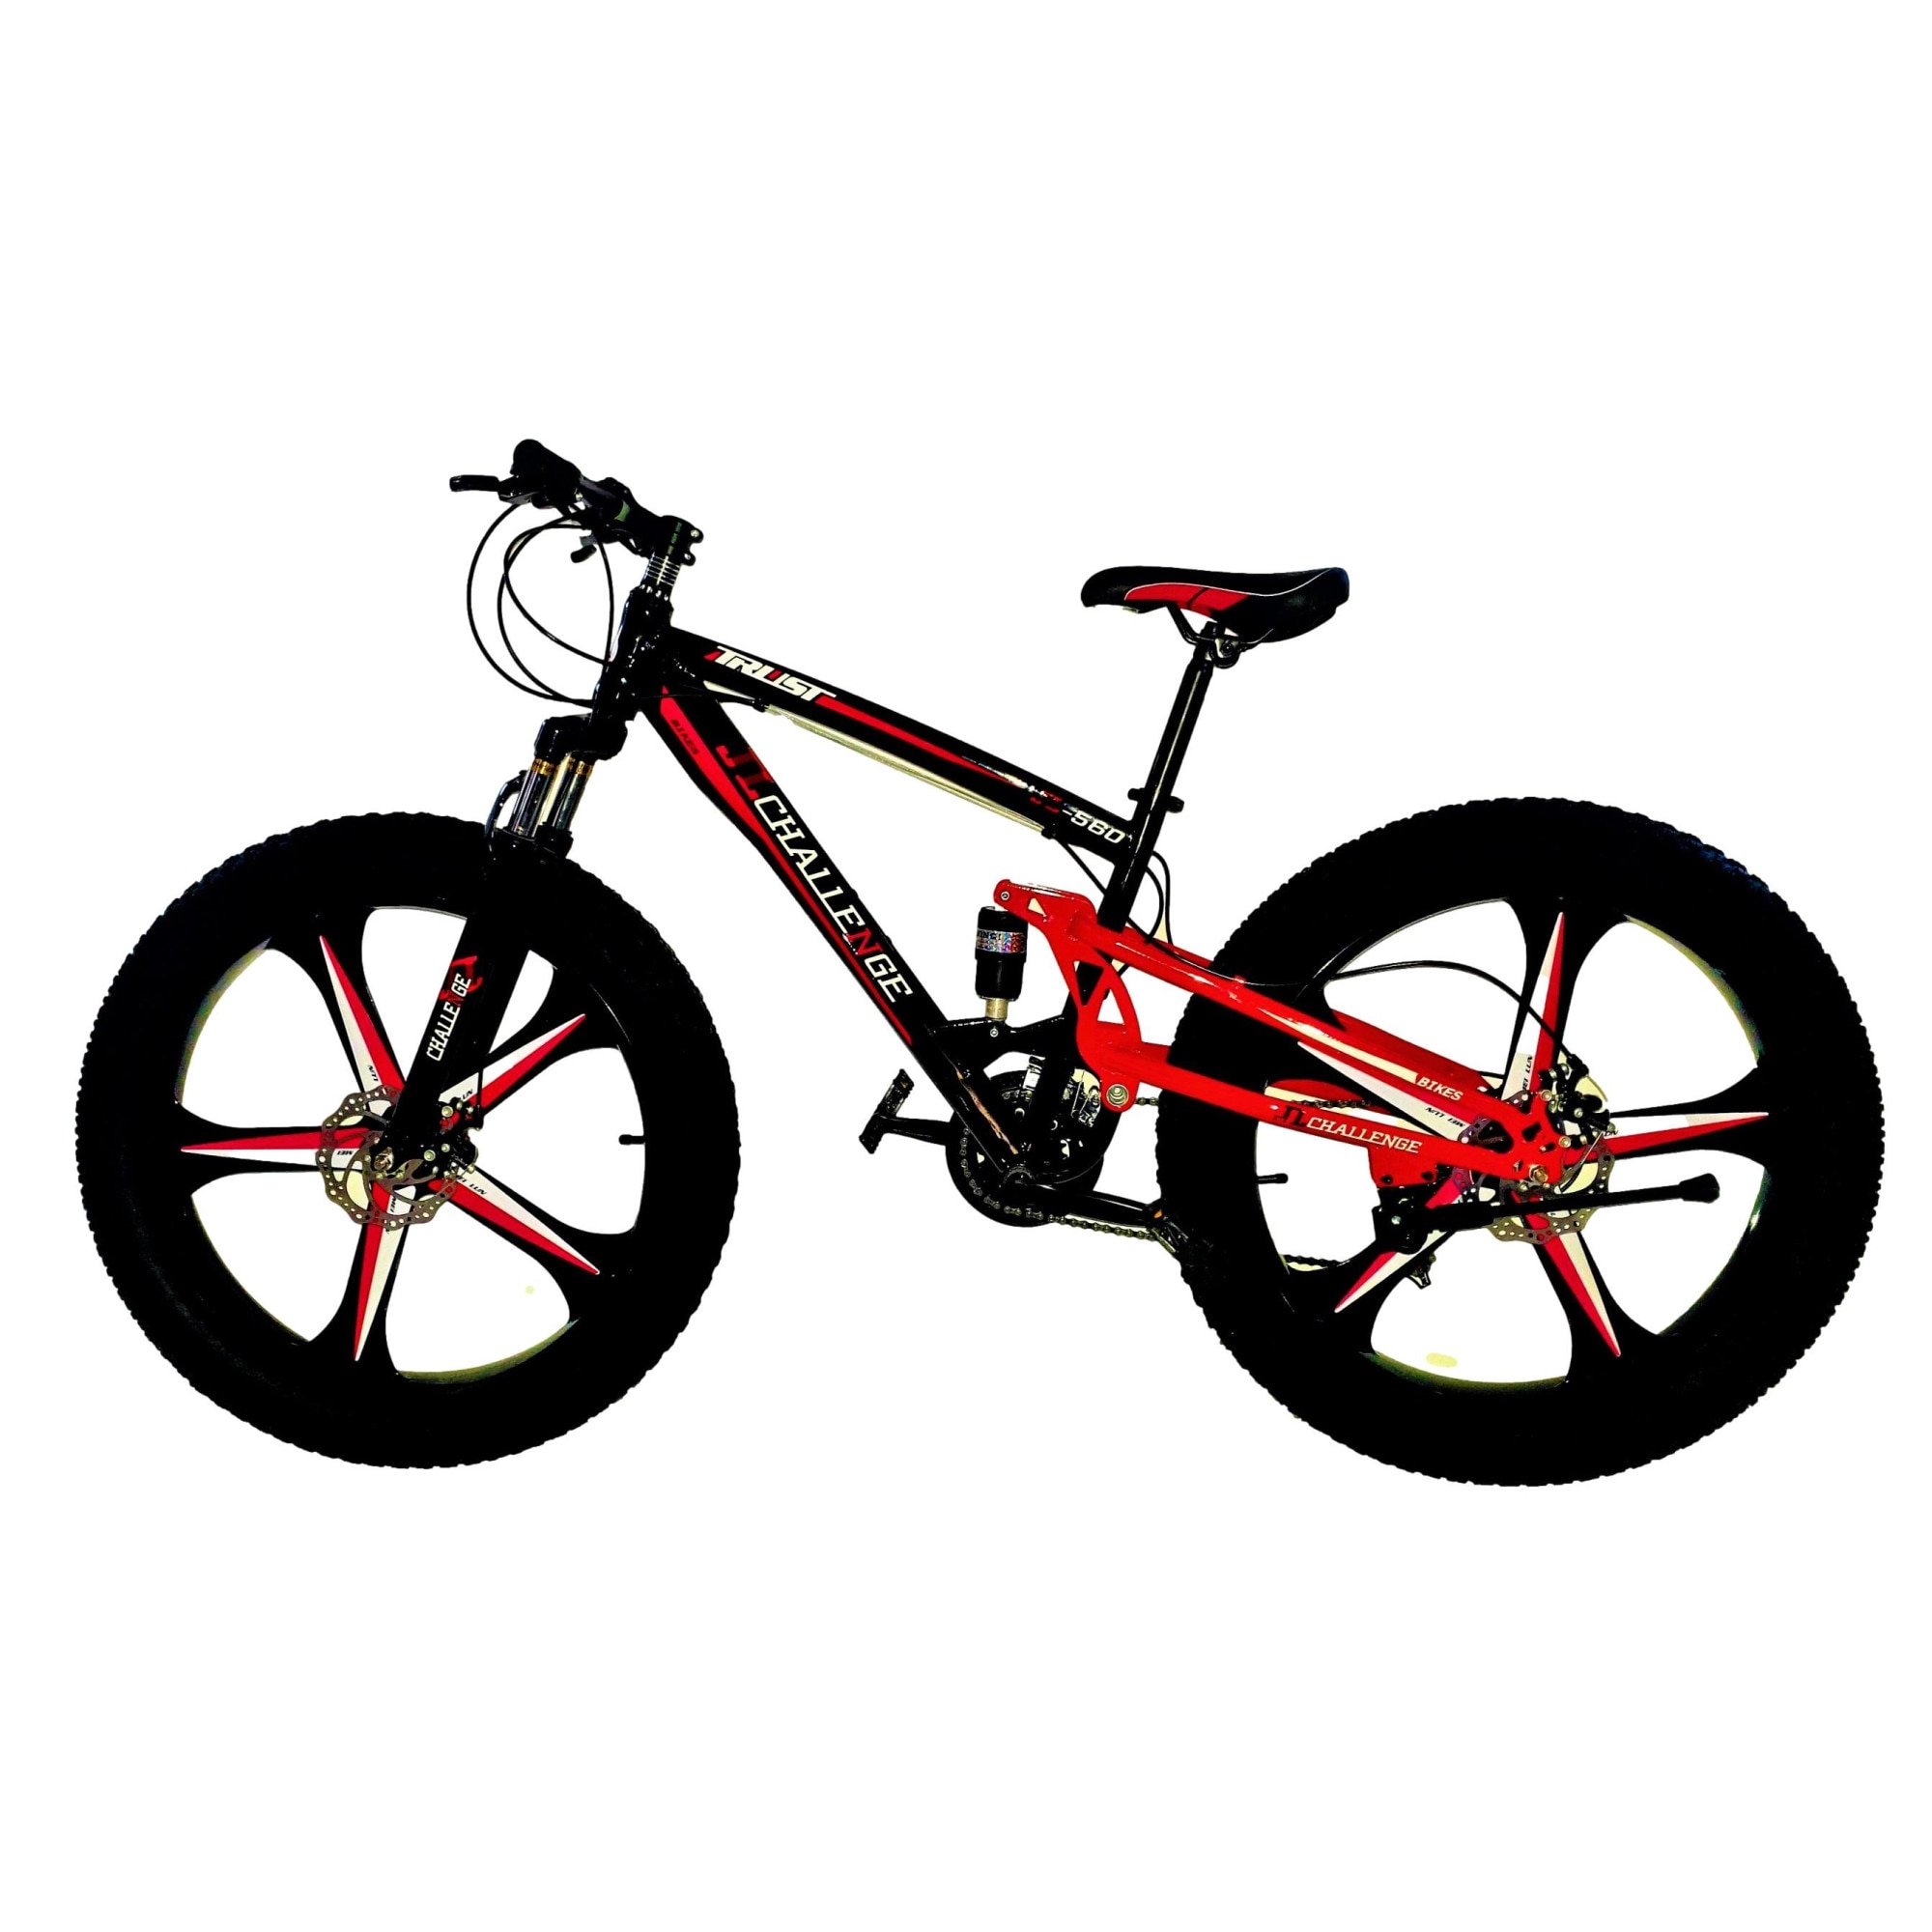 breaking Dawn save create Bicicleta Mountain Bike – CHALLENGE, 27M, 26 inch, genti aluminiu turnate,  5 spite, cadru otel, frane mecanice pe disc fata/spate, full suspensie, 21  de viteze, culoare negru/rosu - eMAG.ro